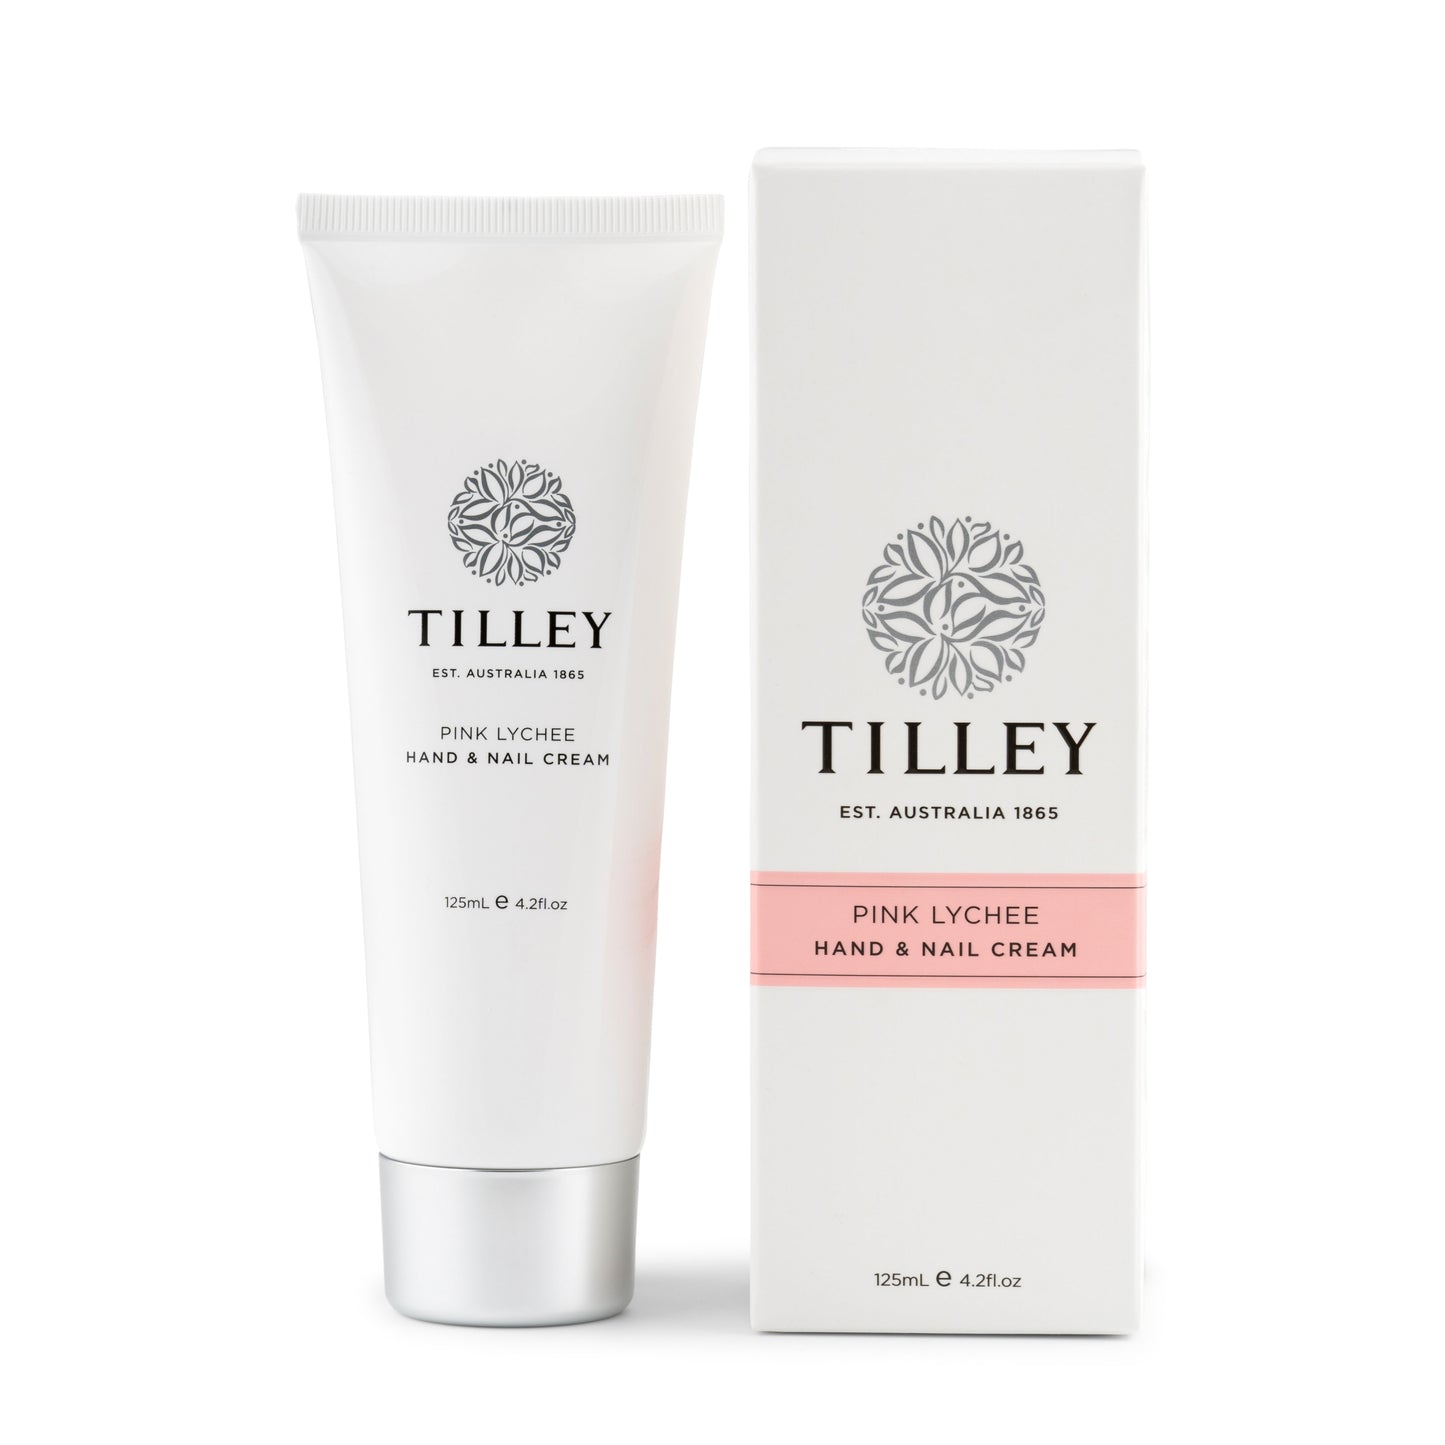 Tilley | Hand & Nail Cream I Pink Lychee